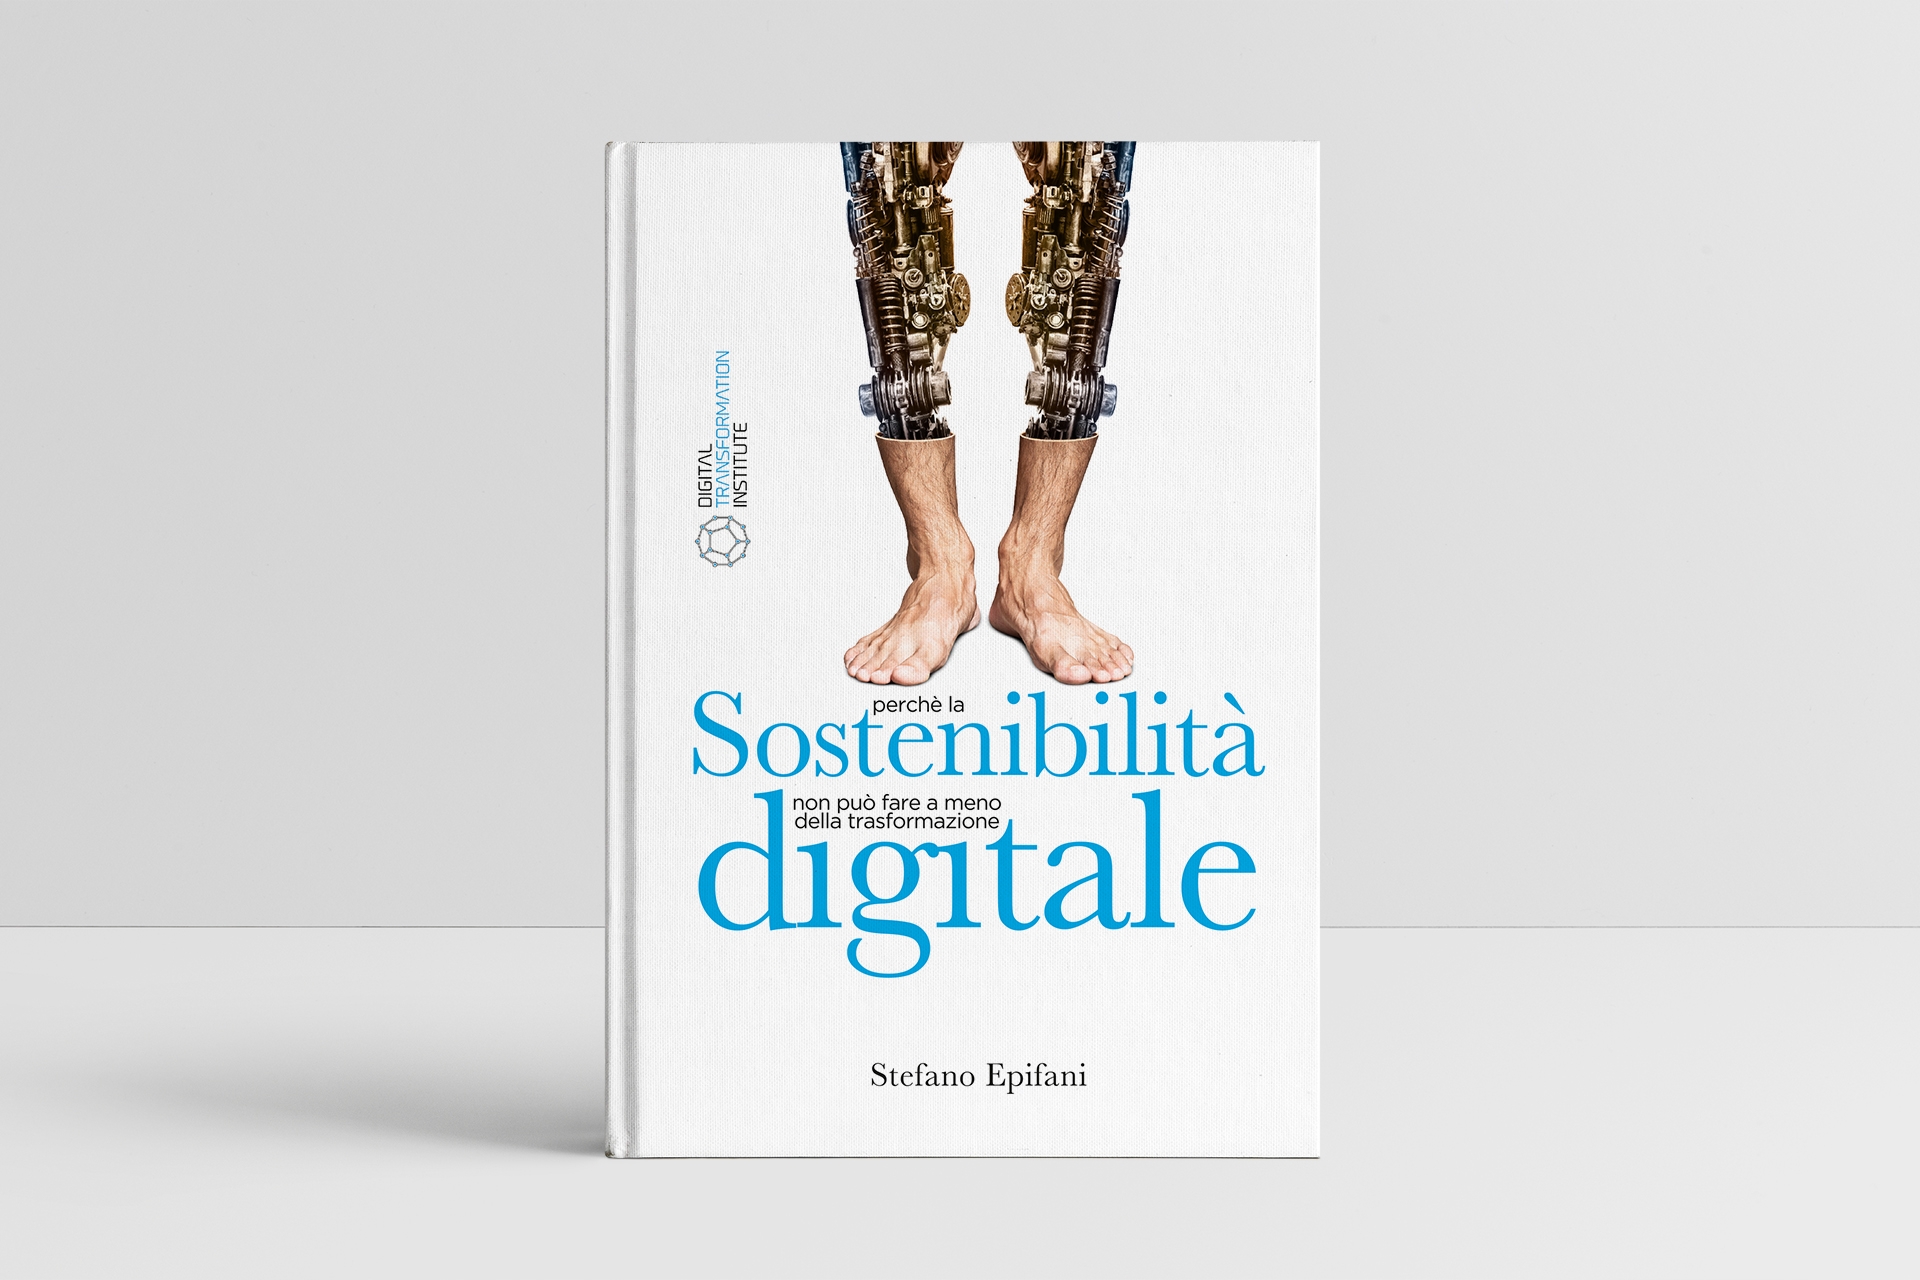 Stefano Epifani: knjiga "Digitalna održivost: zašto održivost ne može bez digitalne transformacije" autora Stefana Epifanija